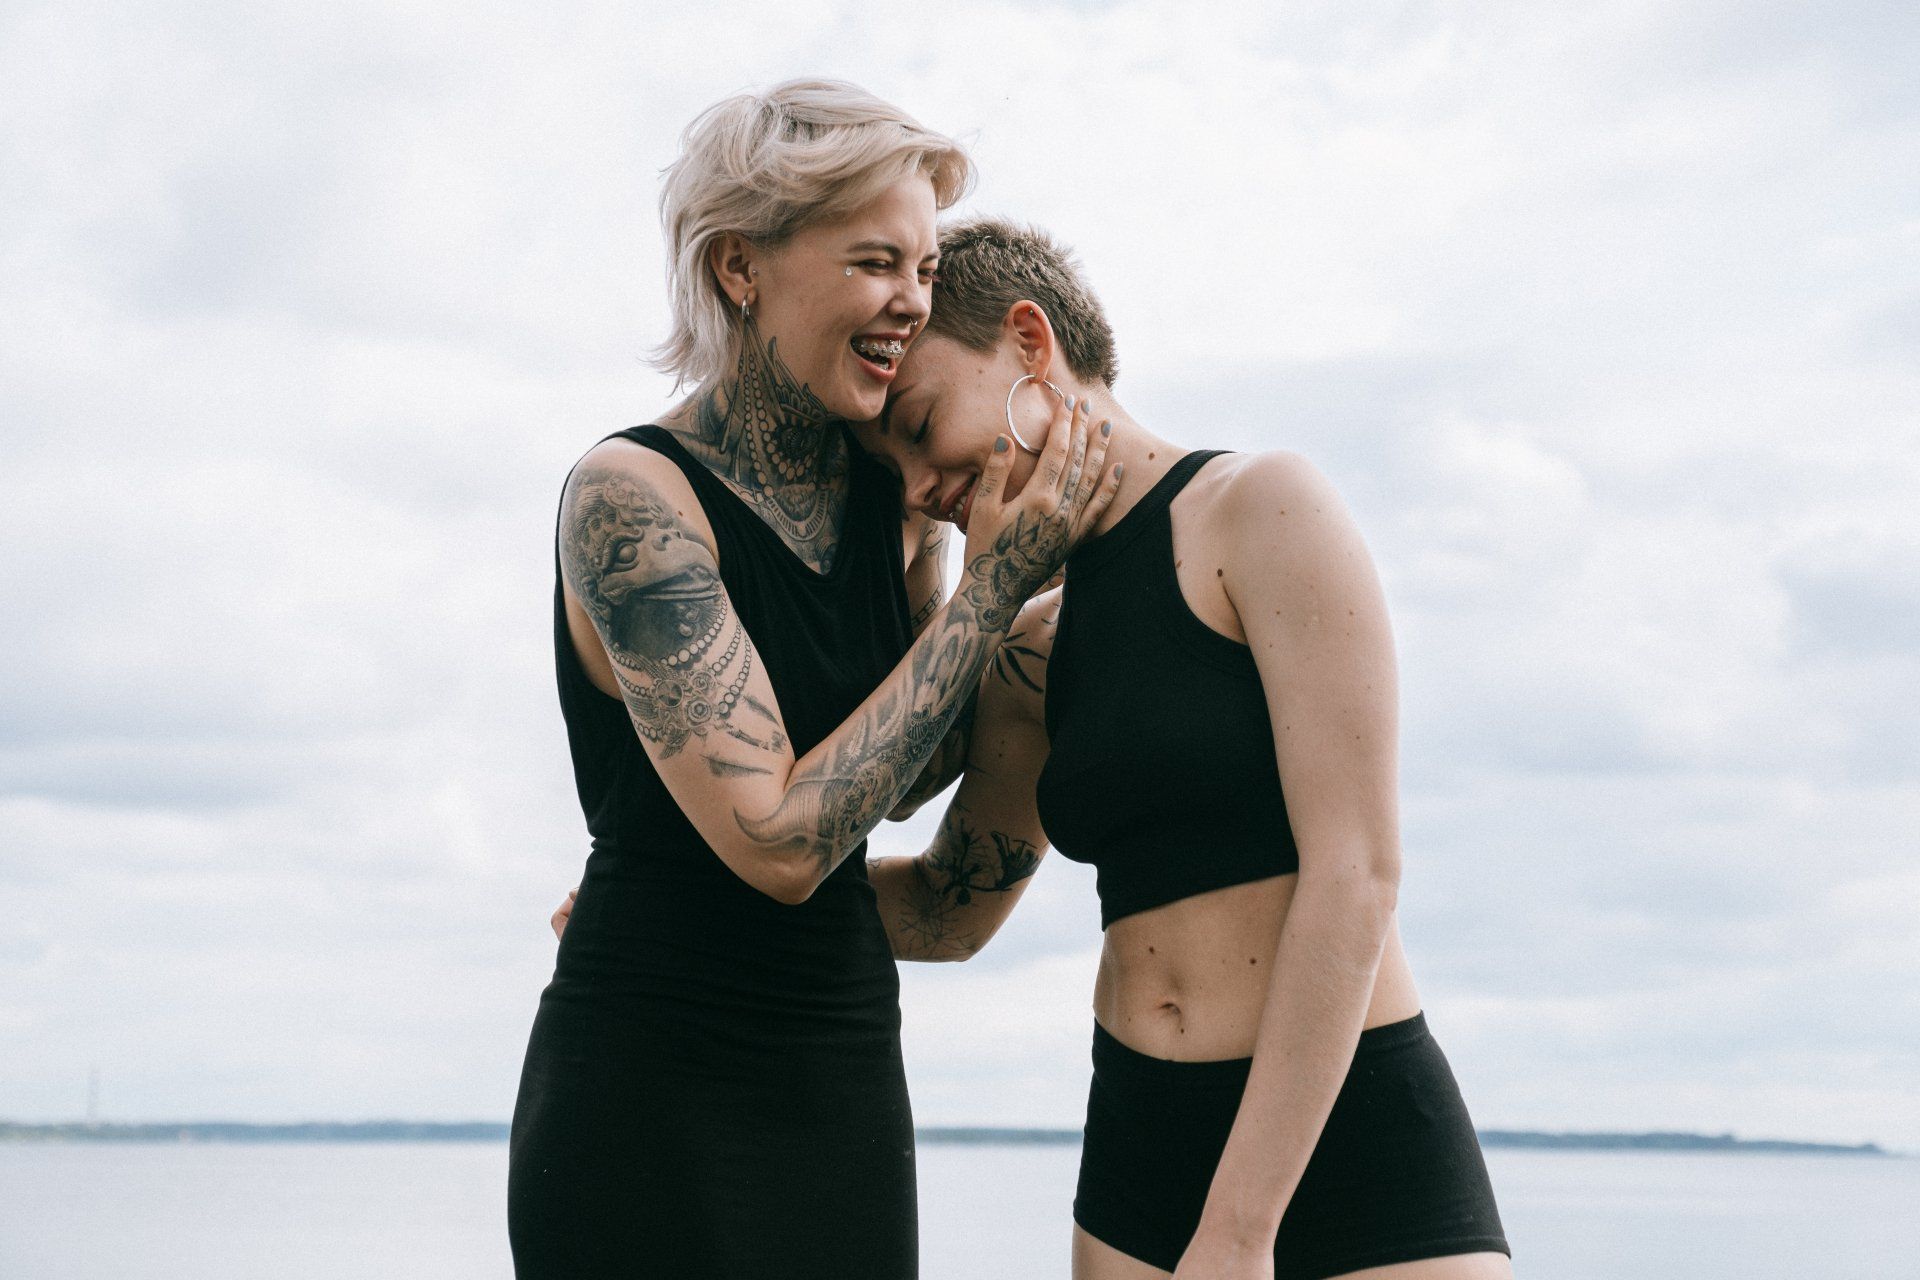 deux femmes avec des tatouages se tiennent l' une à côté de l' autre